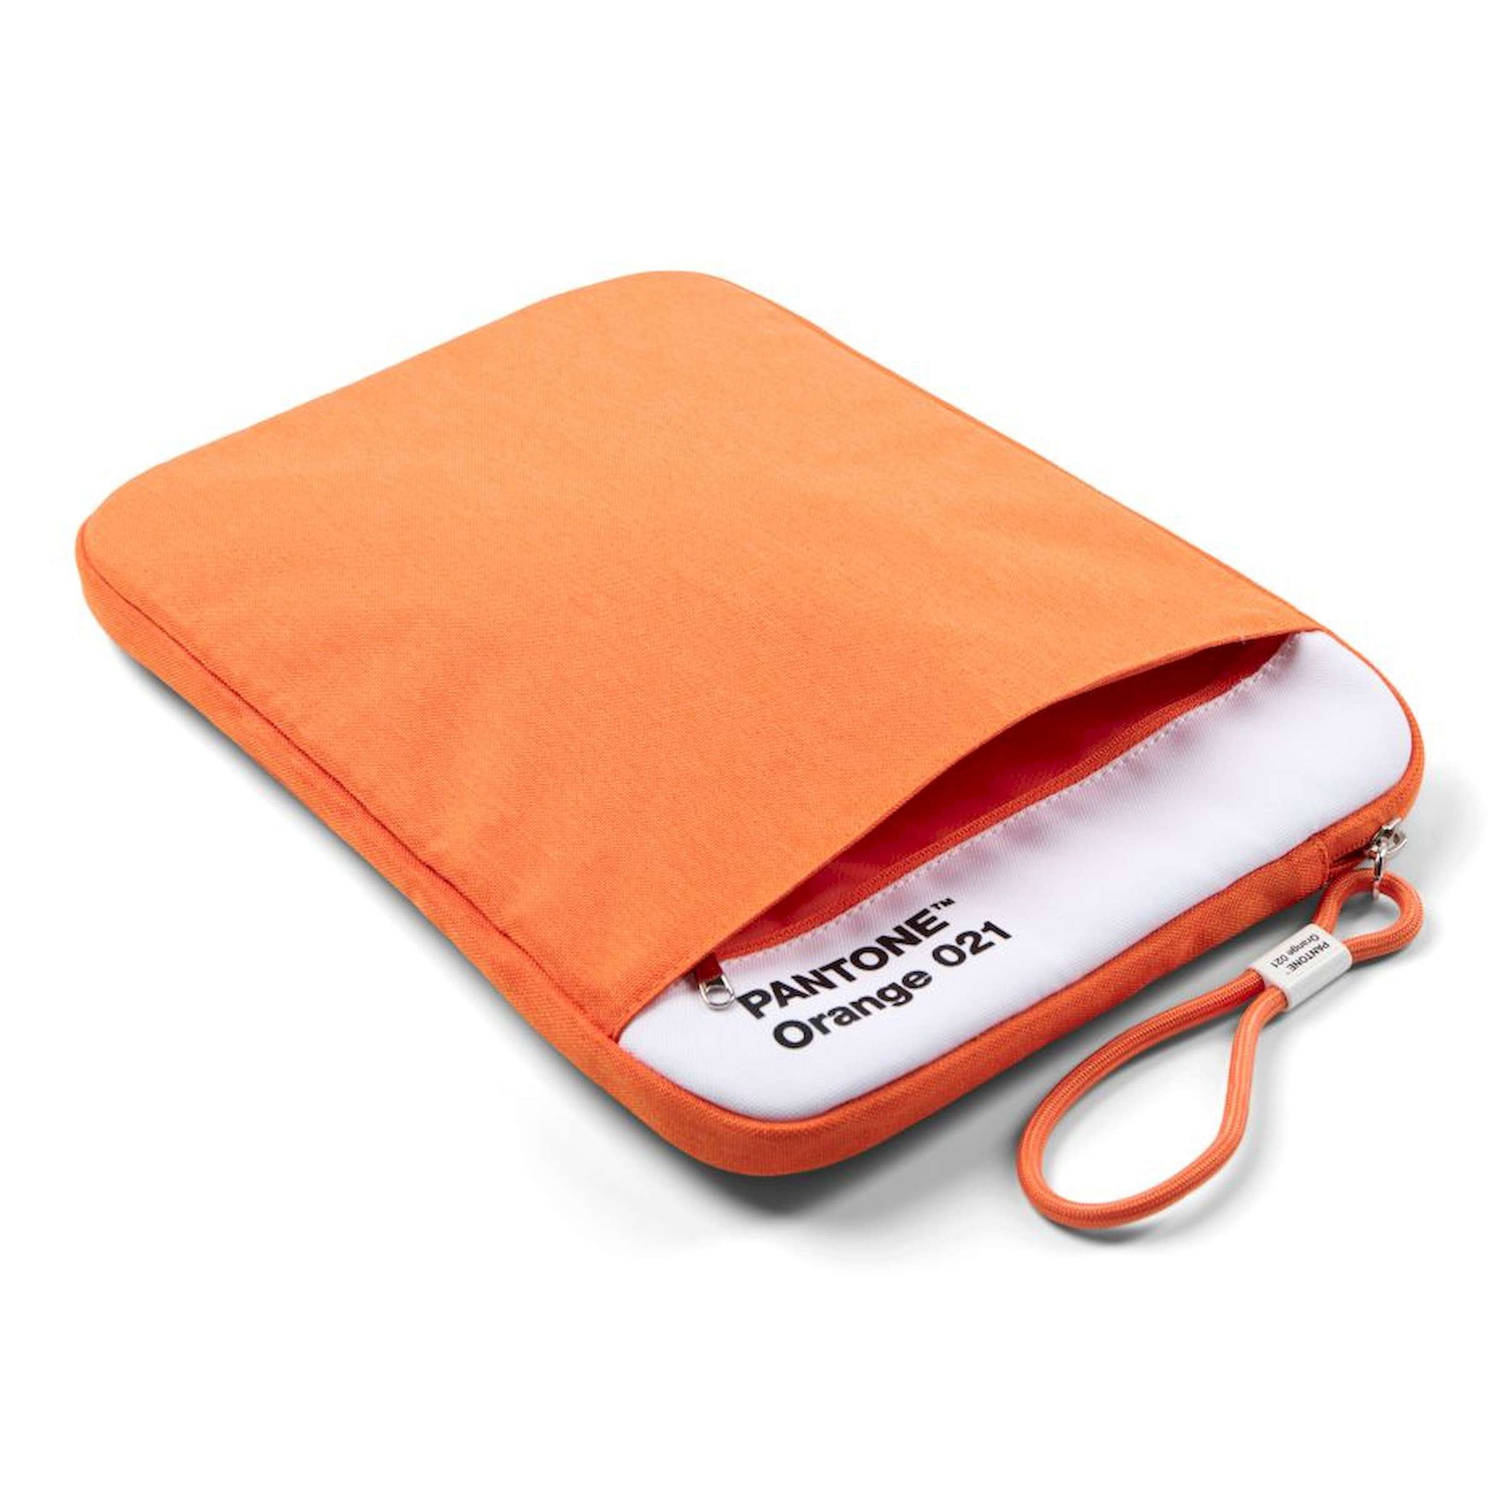 Copenhagen Design Beschermhoes voor Tablet 13 inch Orange 021 C Polyester Oranje